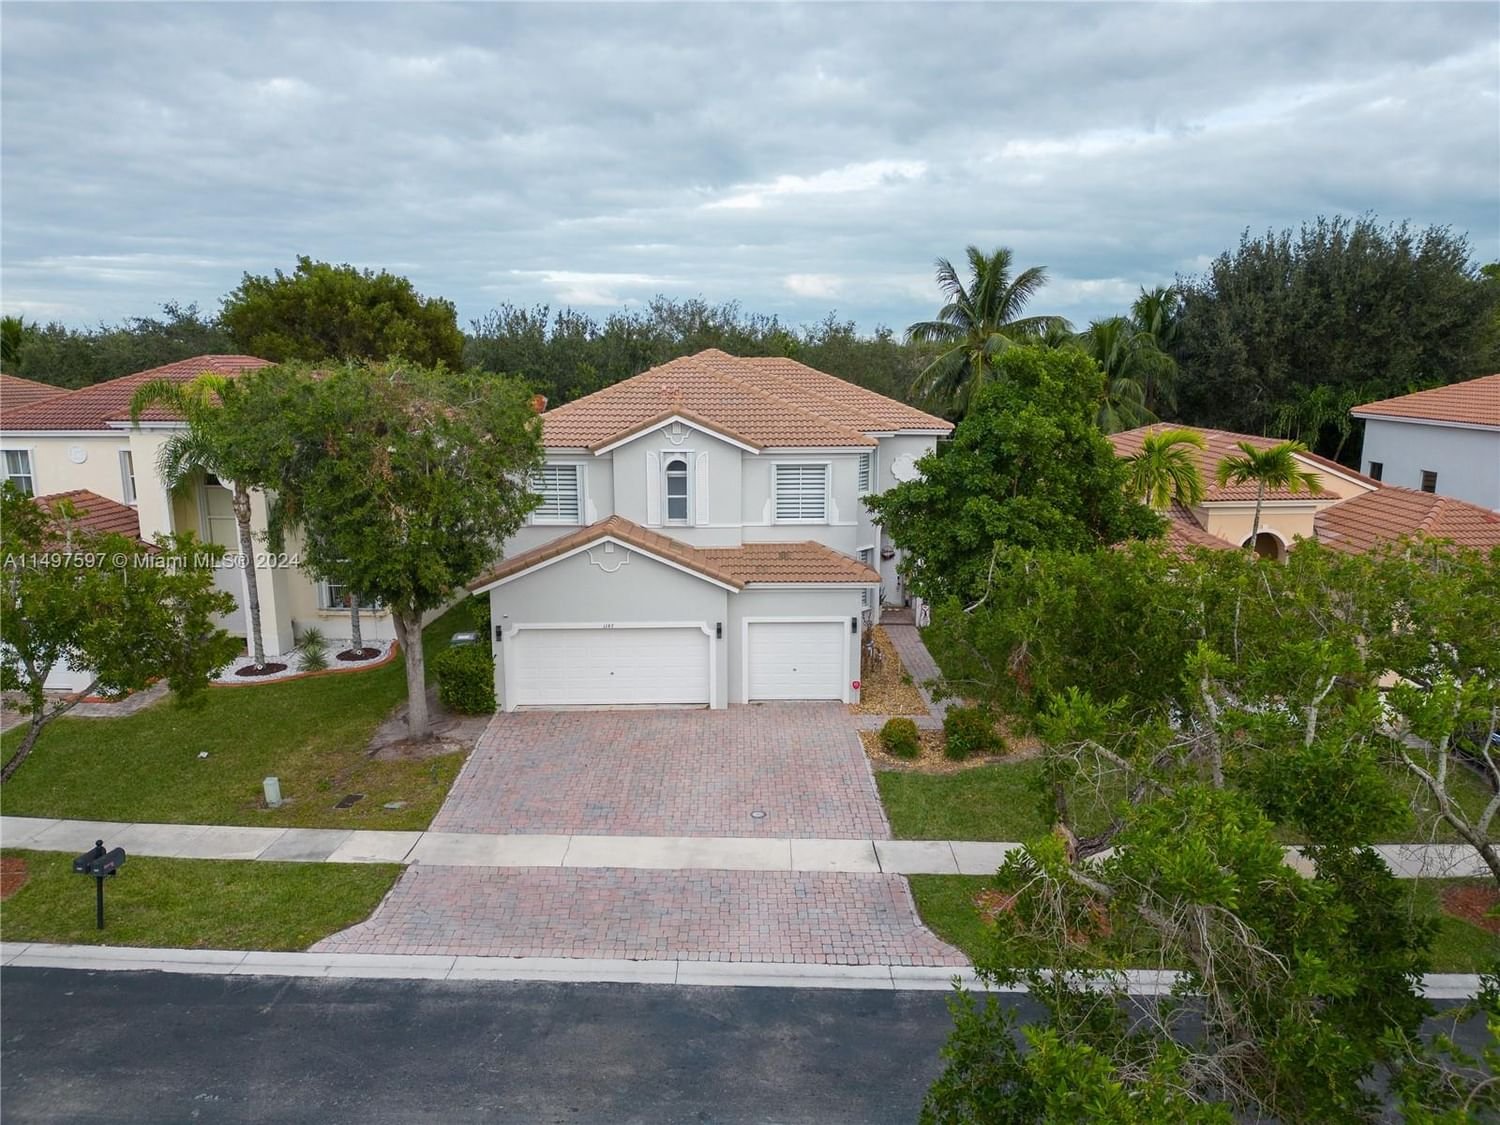 Real estate property located at 1147 37th Pl, Miami-Dade County, PORTOFINO OAKS, Homestead, FL